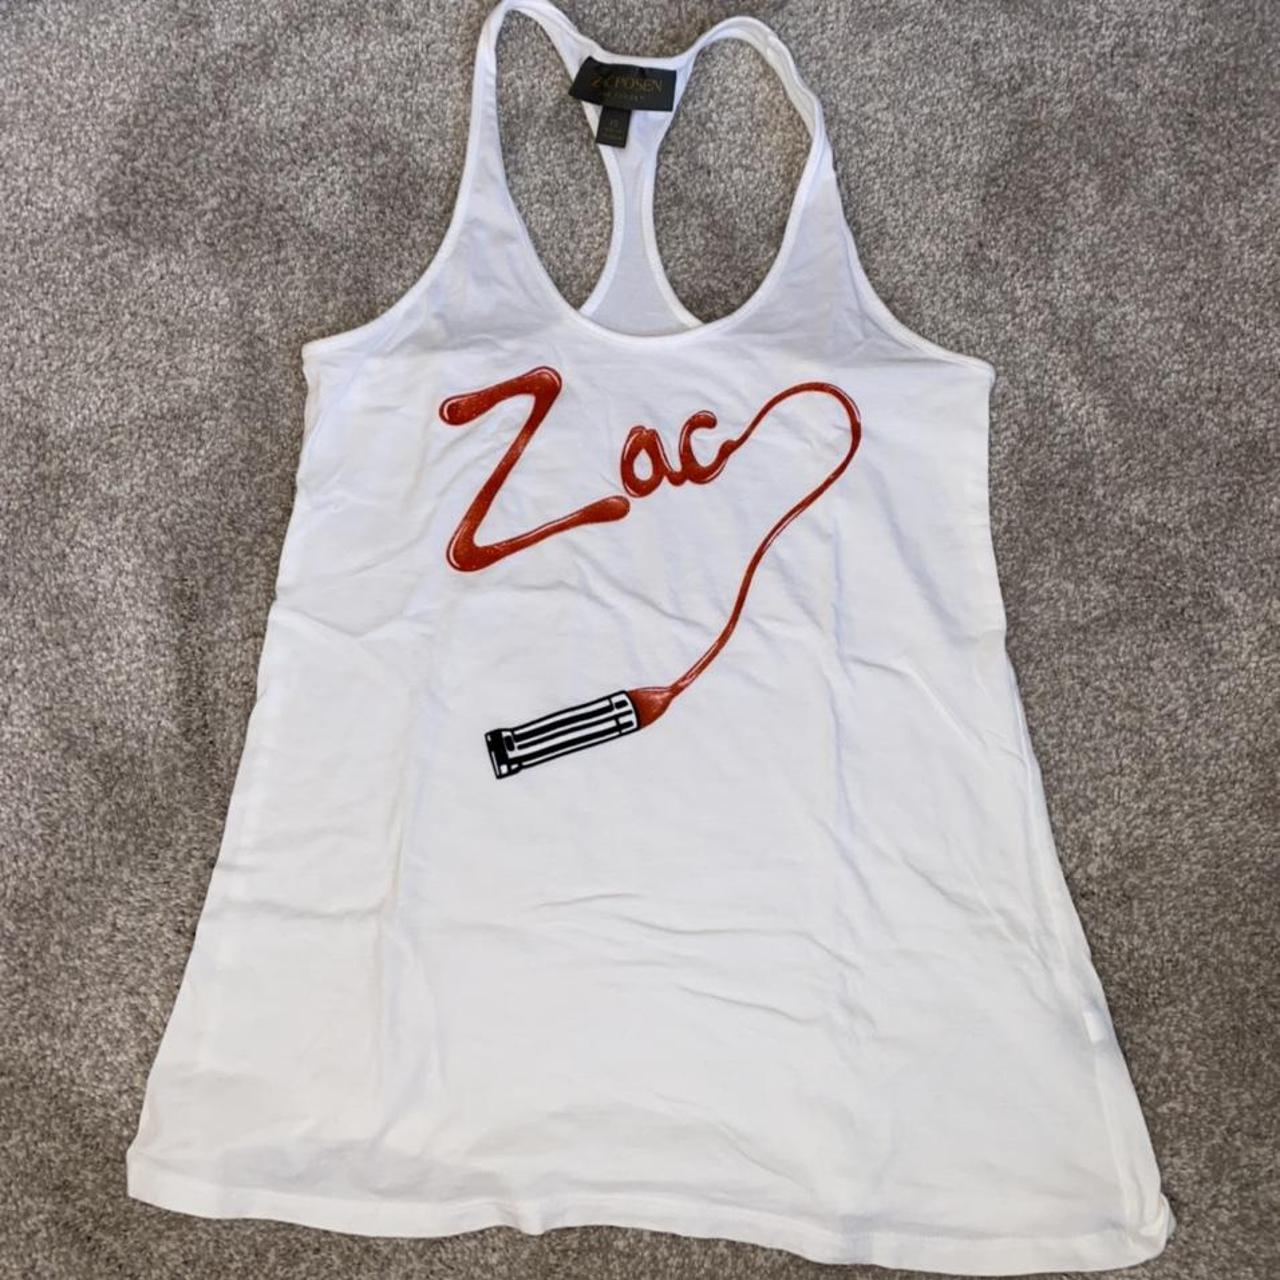 Zac Posen Women's White and Red Vest